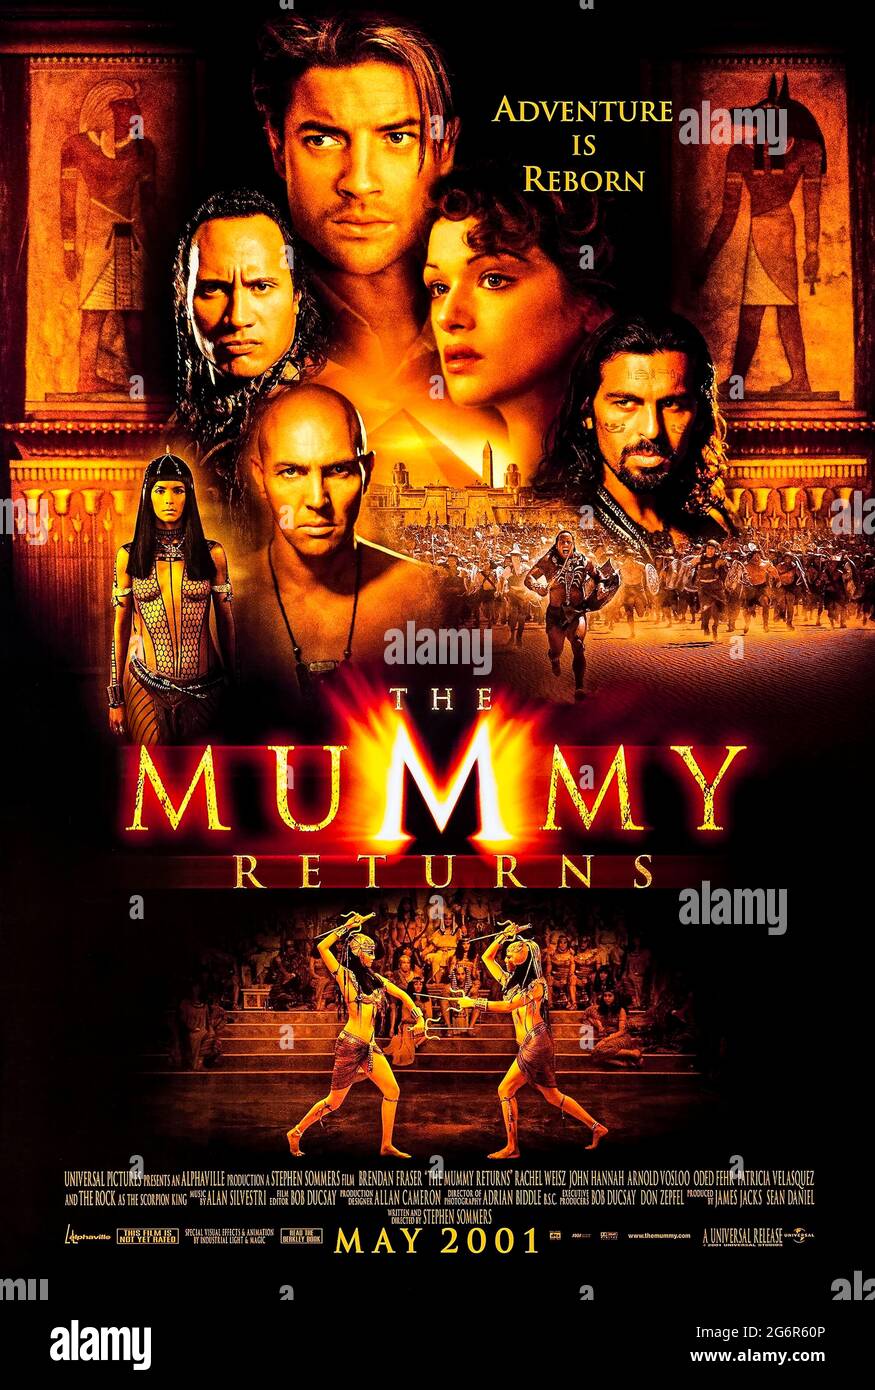 The Mummy Returns (2001) diretto da Stephen Sommers e con Brendan Fraser, Rachel Weisz, Arnold Vosloo e John Hannah. Il corpo mummificato di Imhotep viene spedito in un museo di Londra, dove si risveglia e inizia la sua campagna di rabbia e terrore. Foto Stock